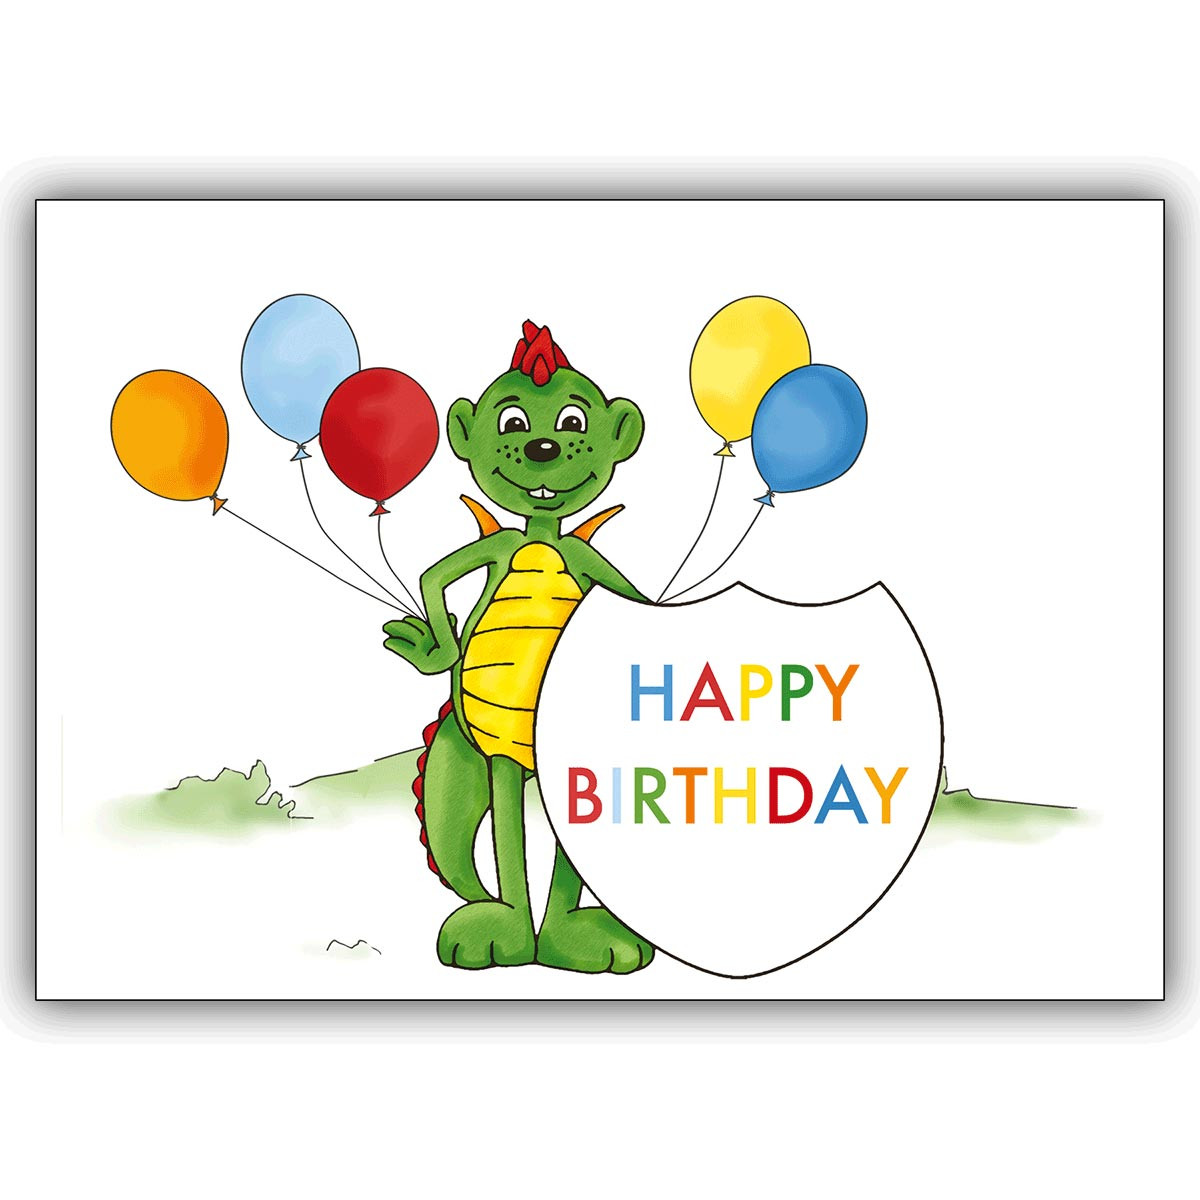 Geburtstagskarten Für Kinder
 Kinder Geburtstagskarte Happy Birthday mit Drachen